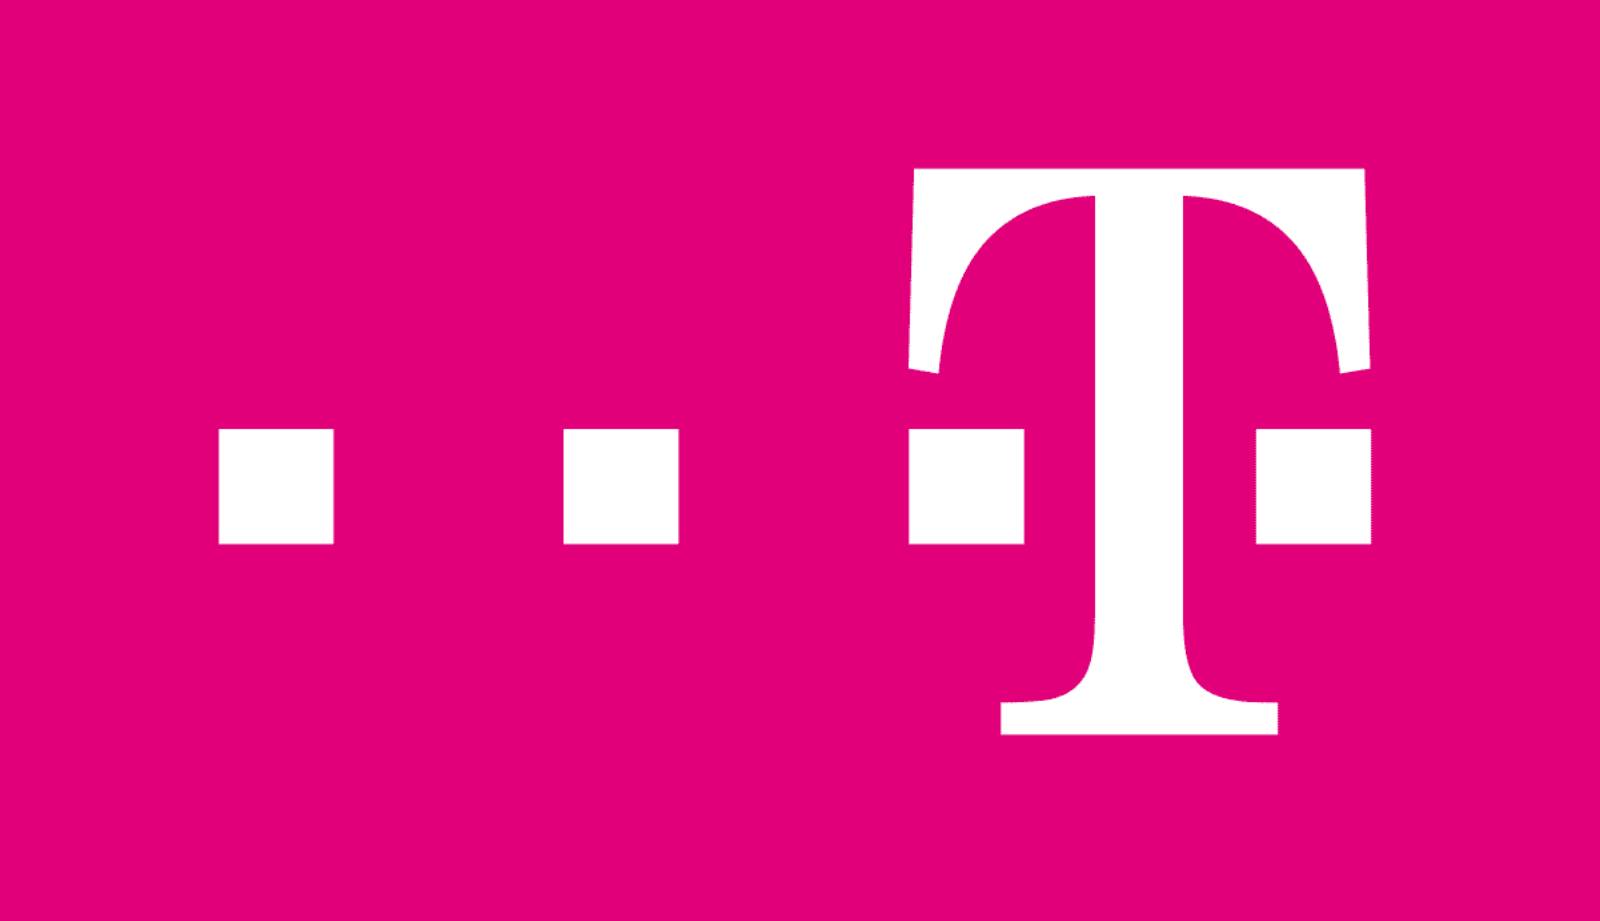 Las ventas de Telekom posponen los problemas